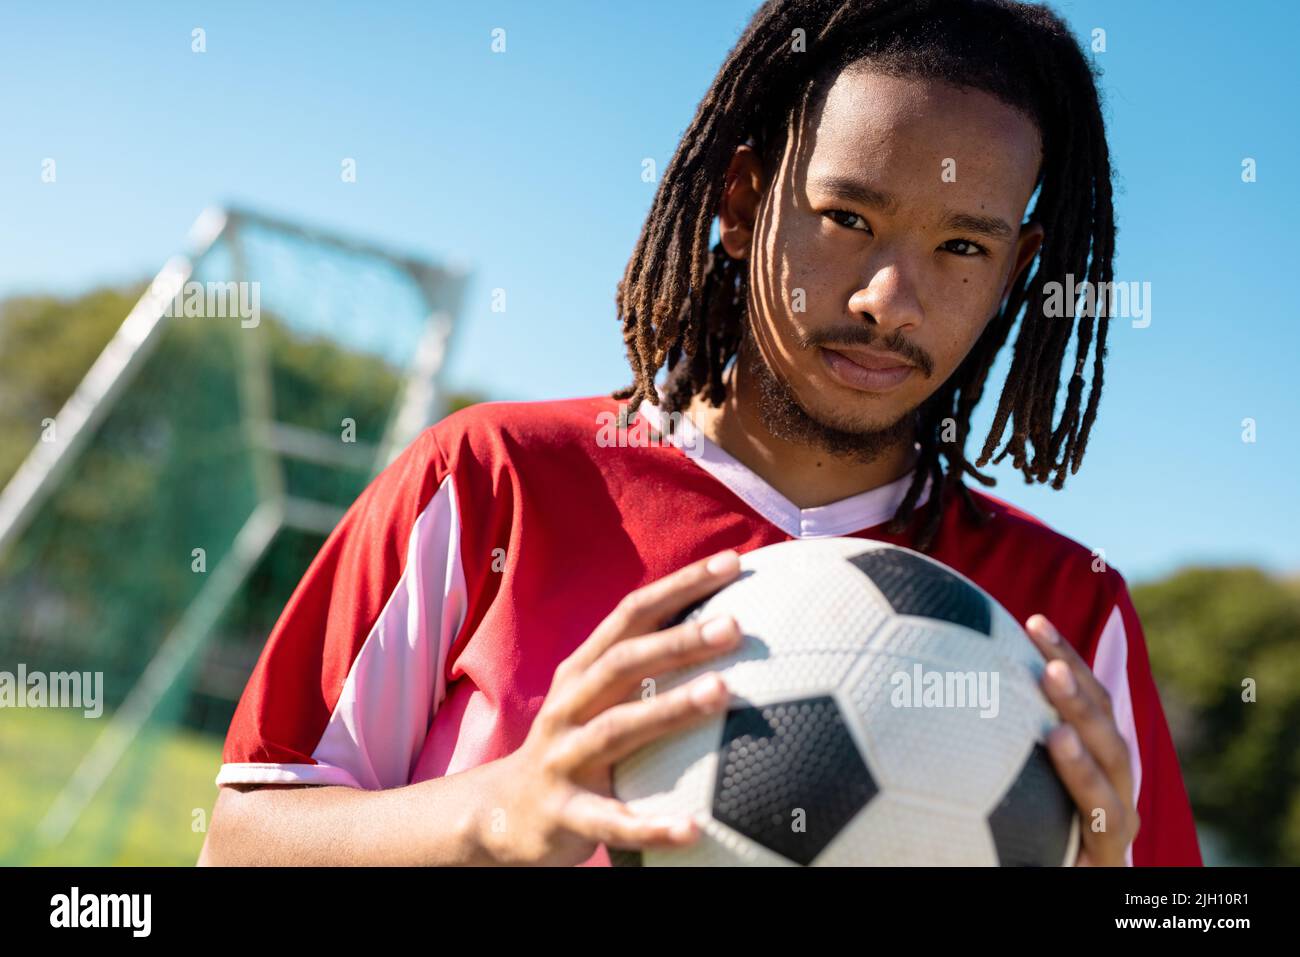 Portrait en bas angle d'un joueur masculin avec des dreadlocks en jersey rouge tenant le ballon contre le ciel clair Banque D'Images